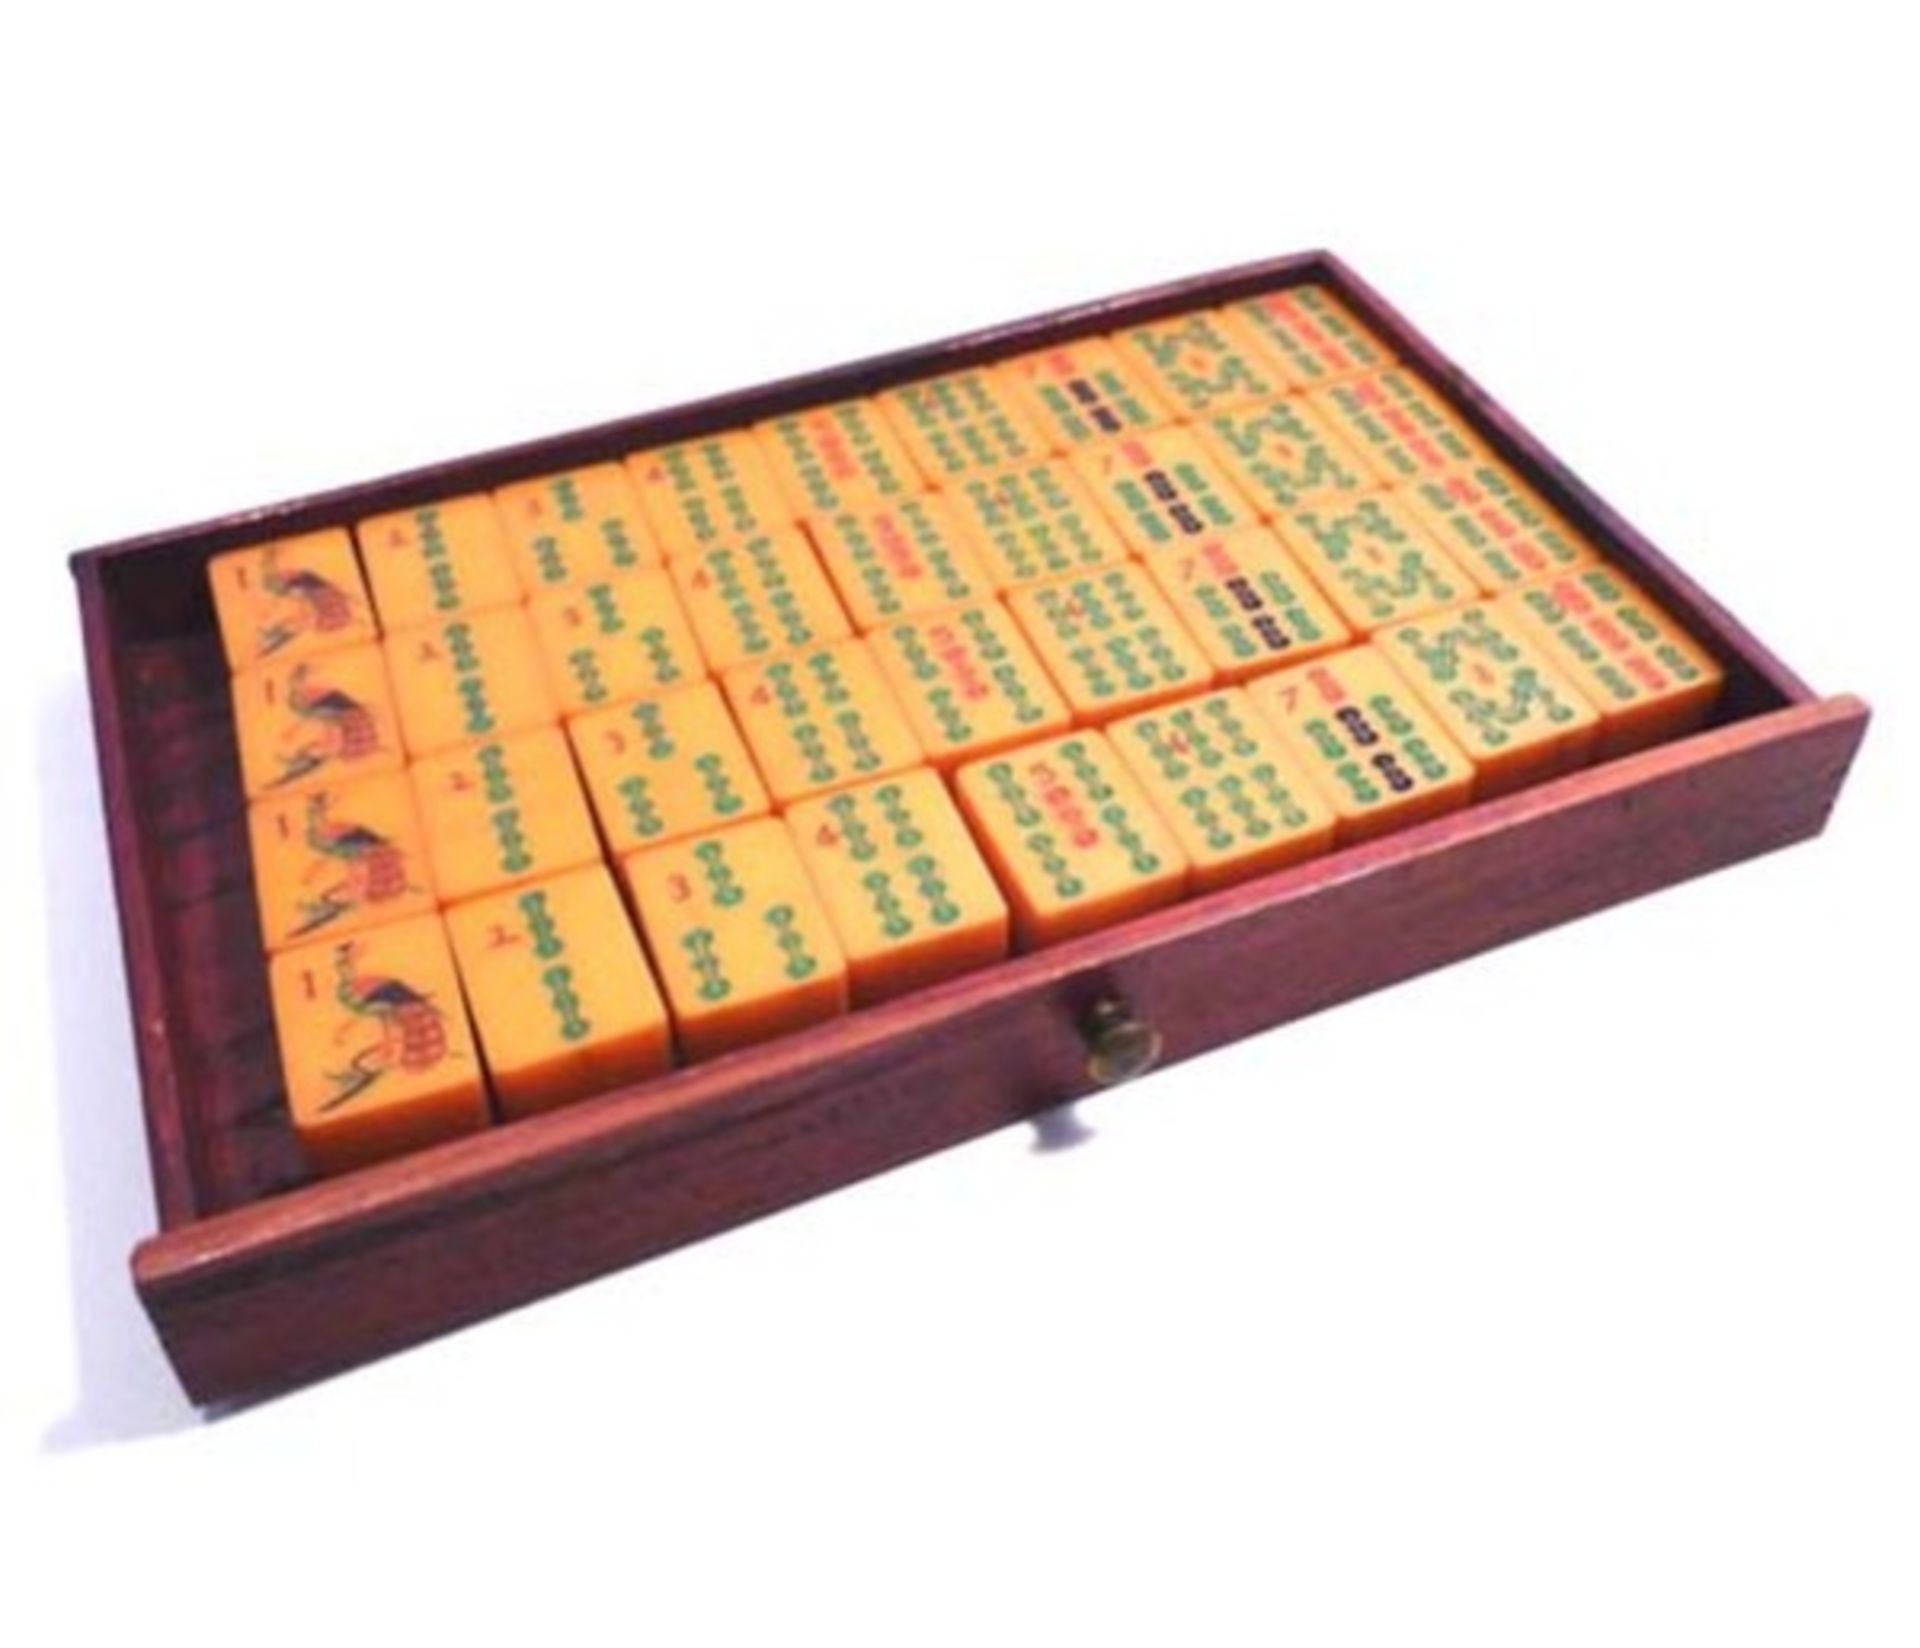 (Mahjong) Mahjong kunststof, traditionele 5-laden doos, ca. 1923 - Bild 8 aus 13